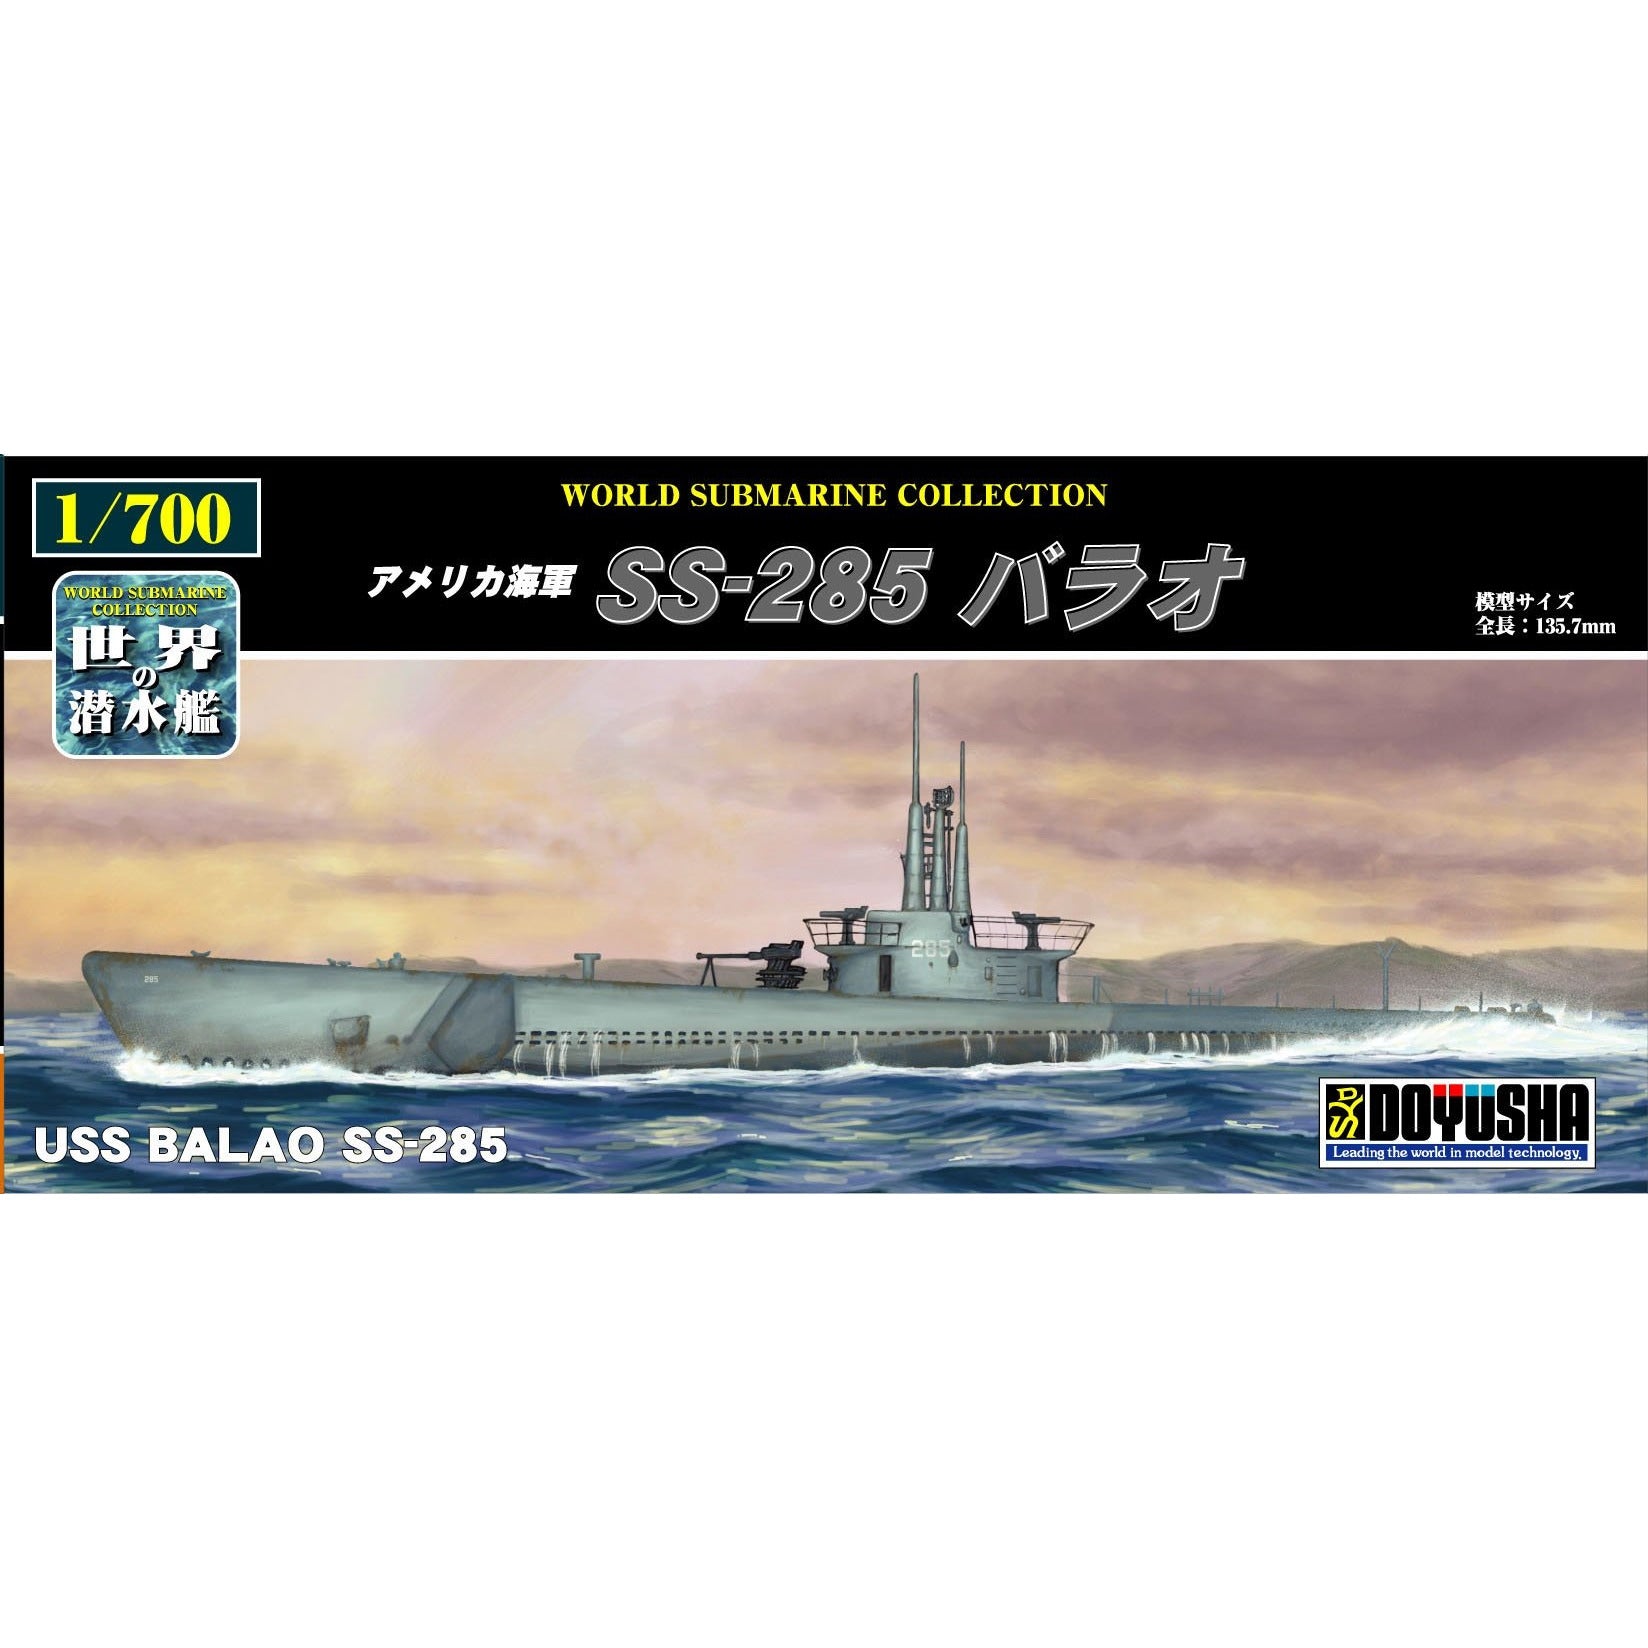 USS Balao SS-285 1/700 Model Submarine Kit #800-11 by Doyusha